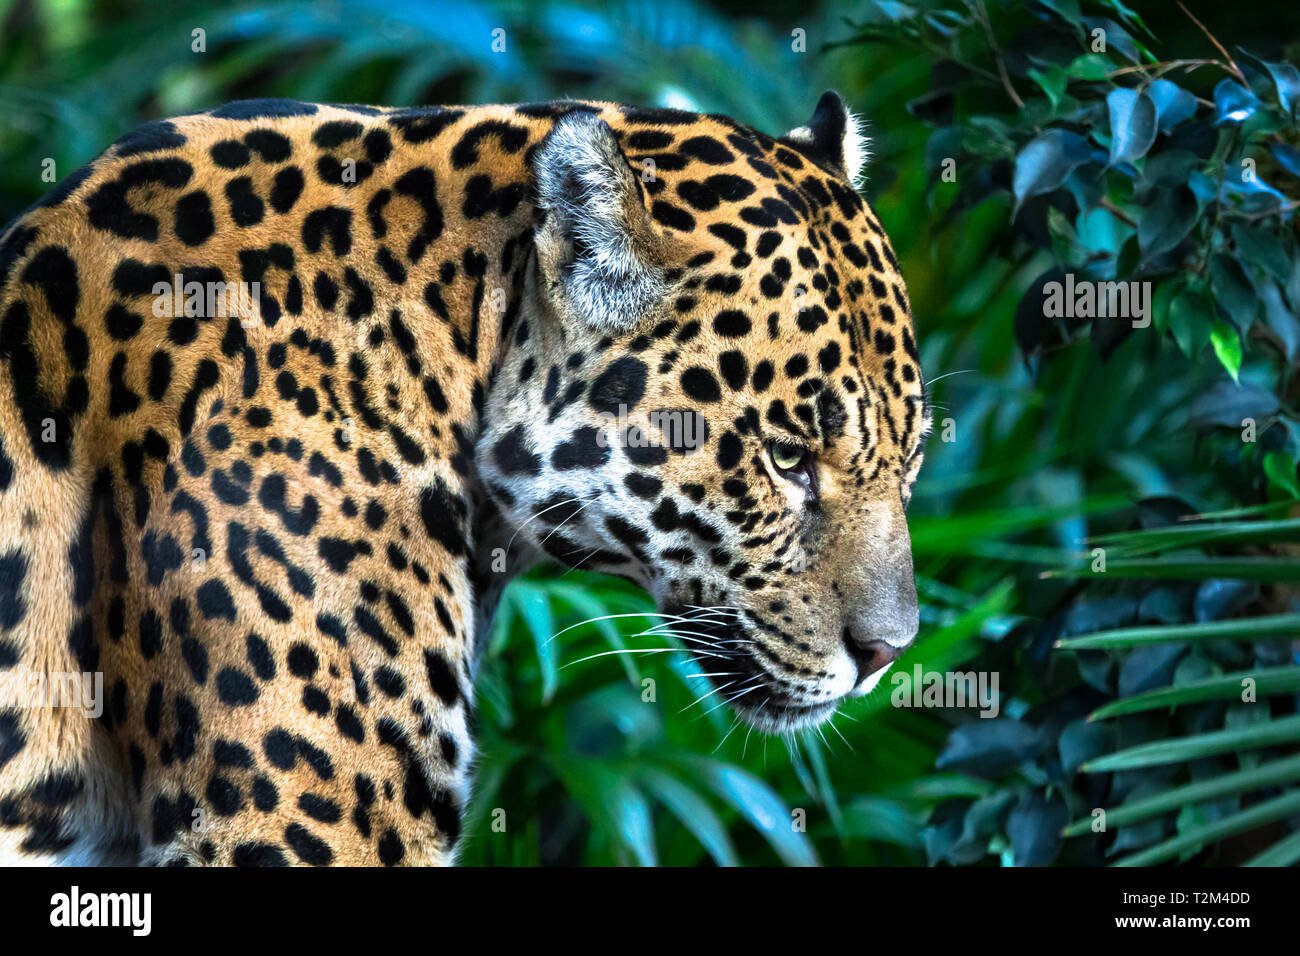 Ein erwachsener Jaguar (Panthera onca) Nahaufnahme unter Dschungel Vegetation. Stockfoto